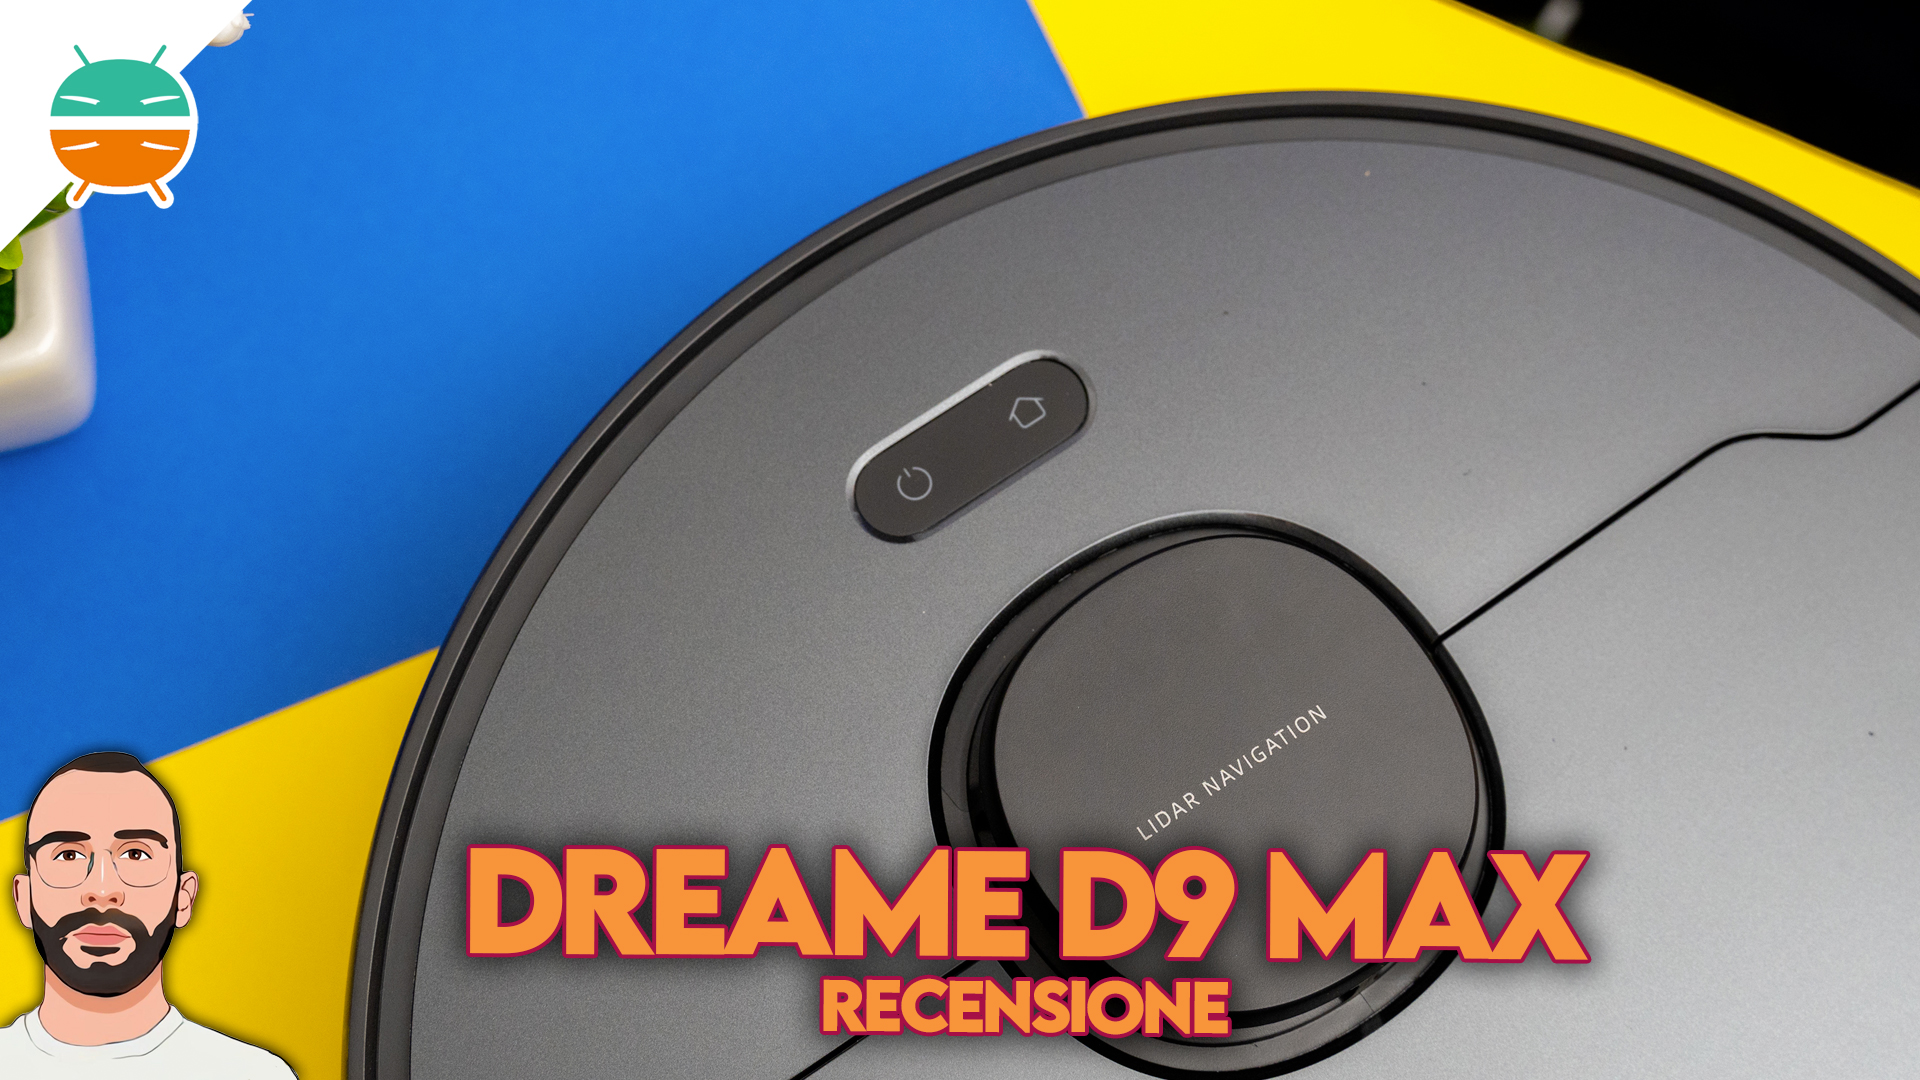 Dreame d9 Max. Dream d9 Max. Dreame bot d9 Max. Dreame д9 Макс. Д9 макс робот